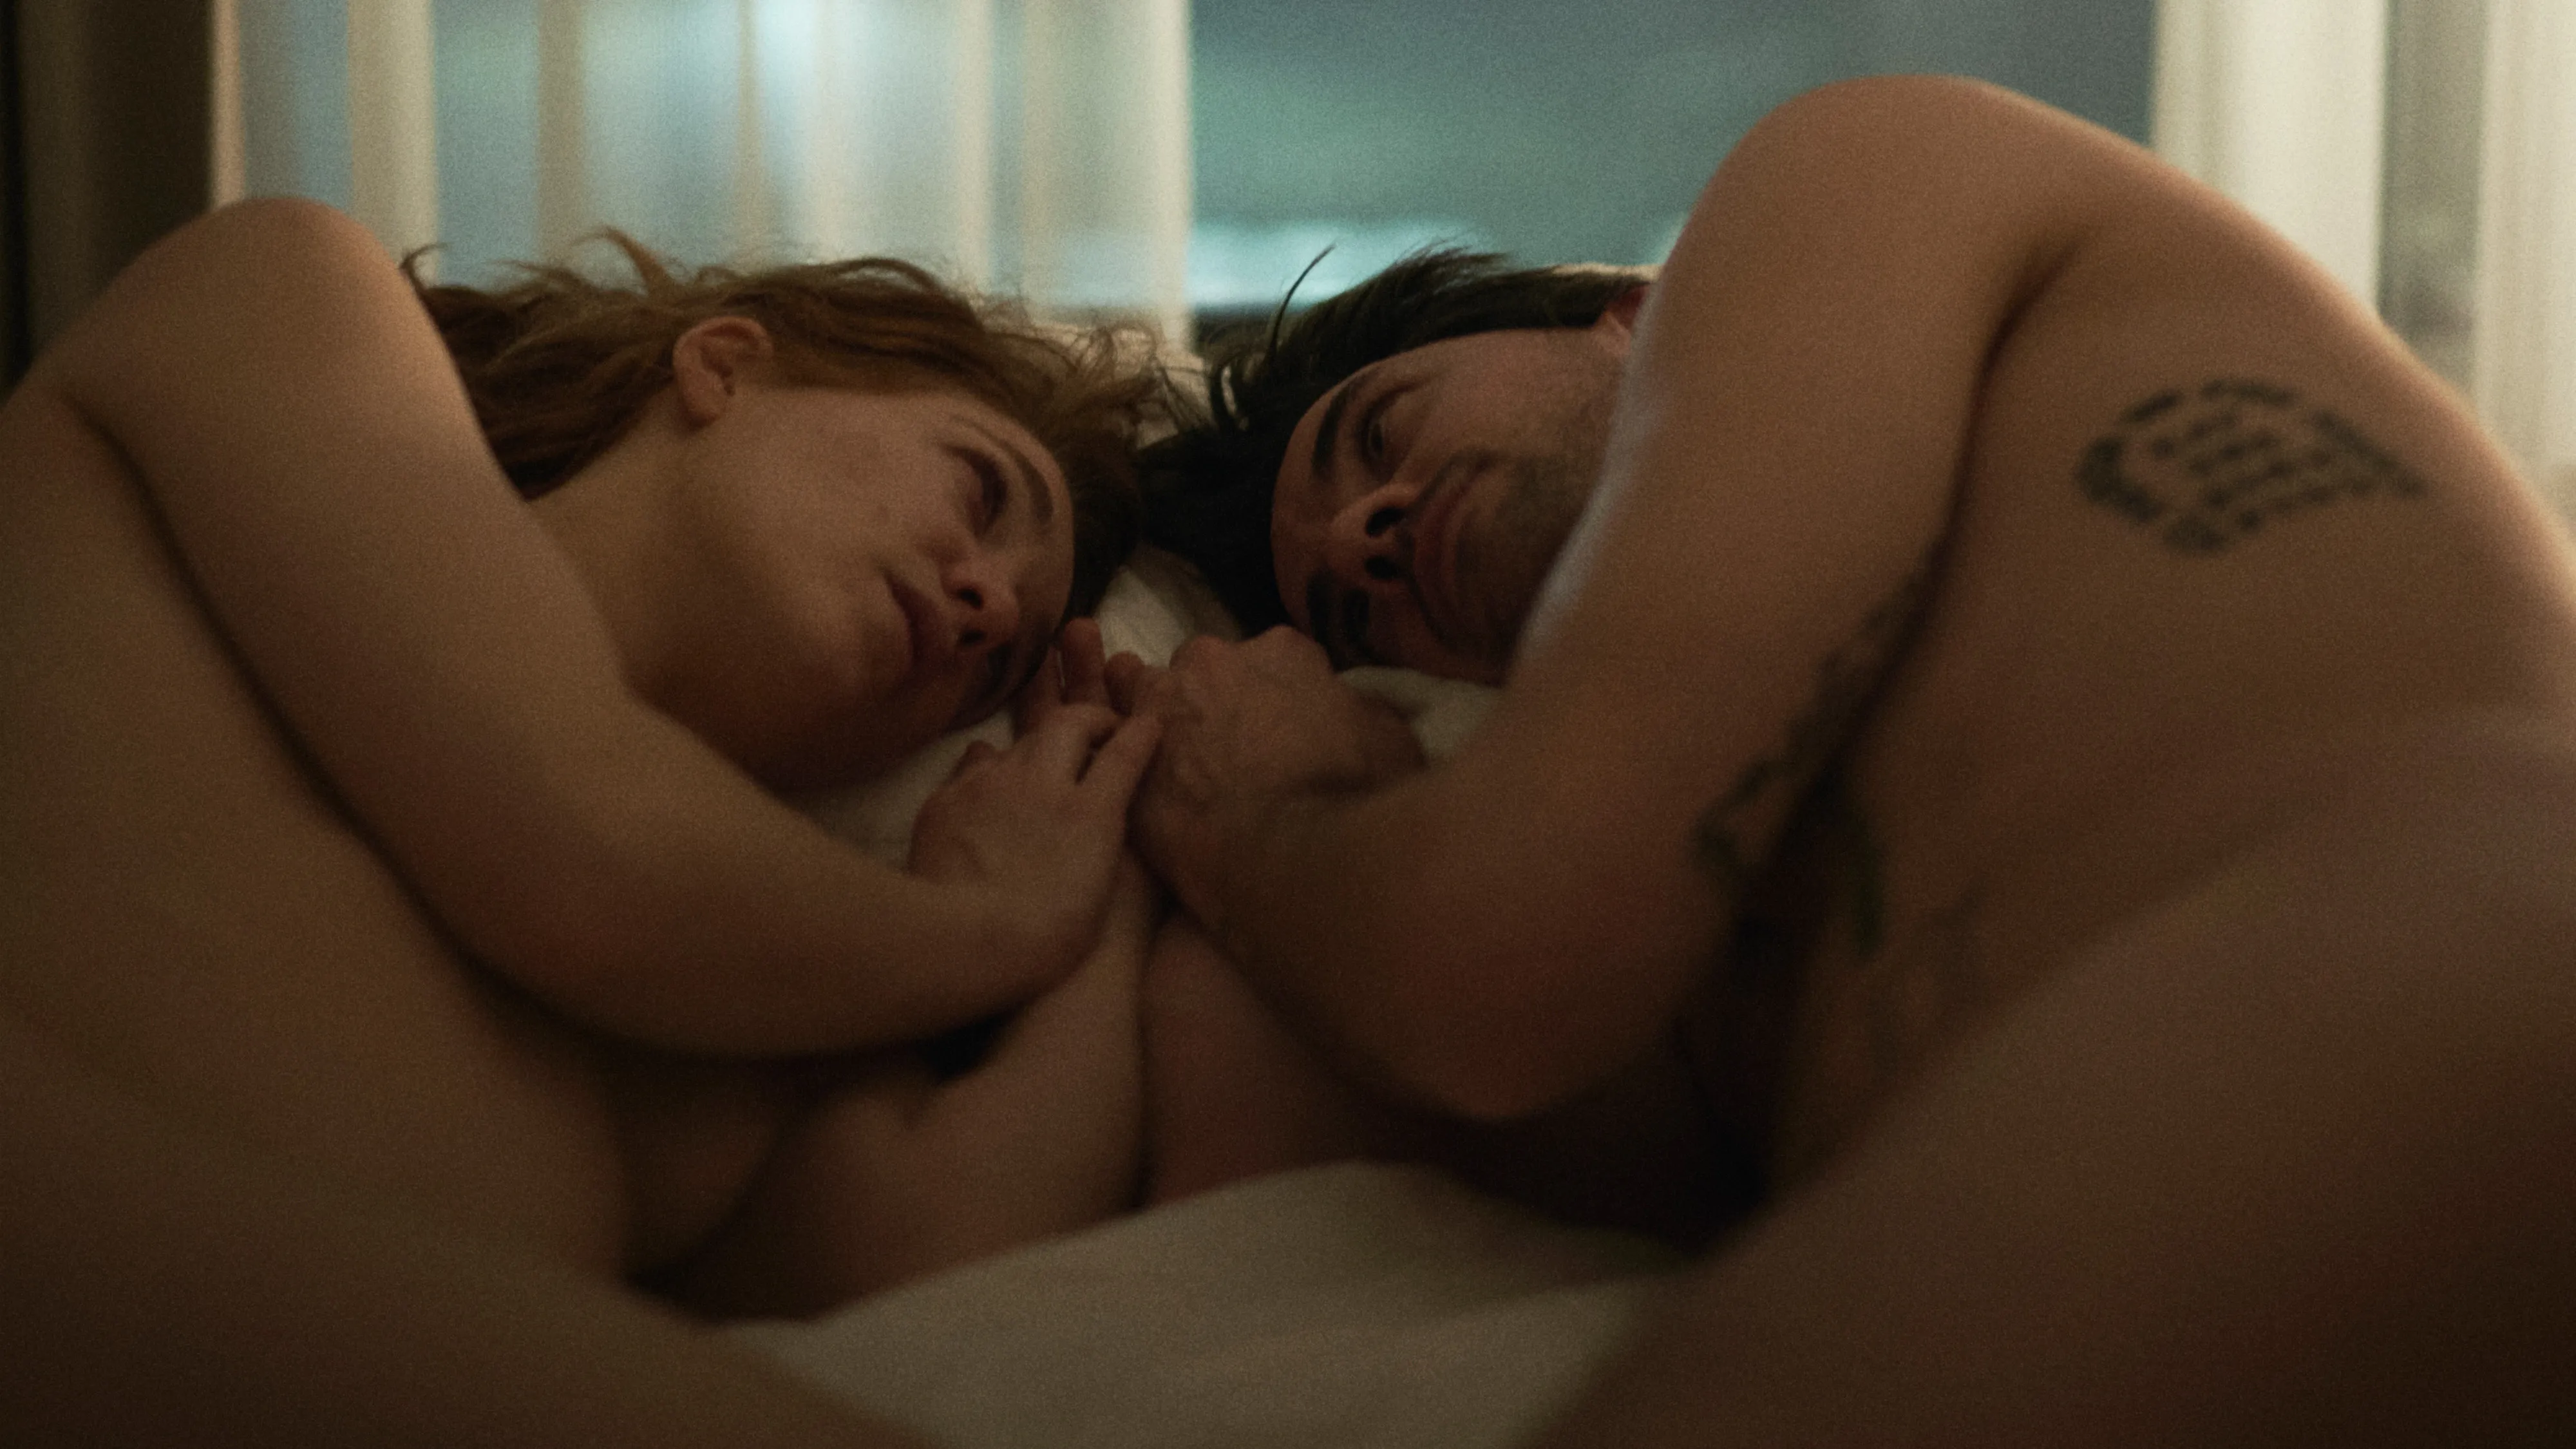 Bild aus dem Film: Ein Paar kurz nach dem Sex. Nackt auf dem Bett.